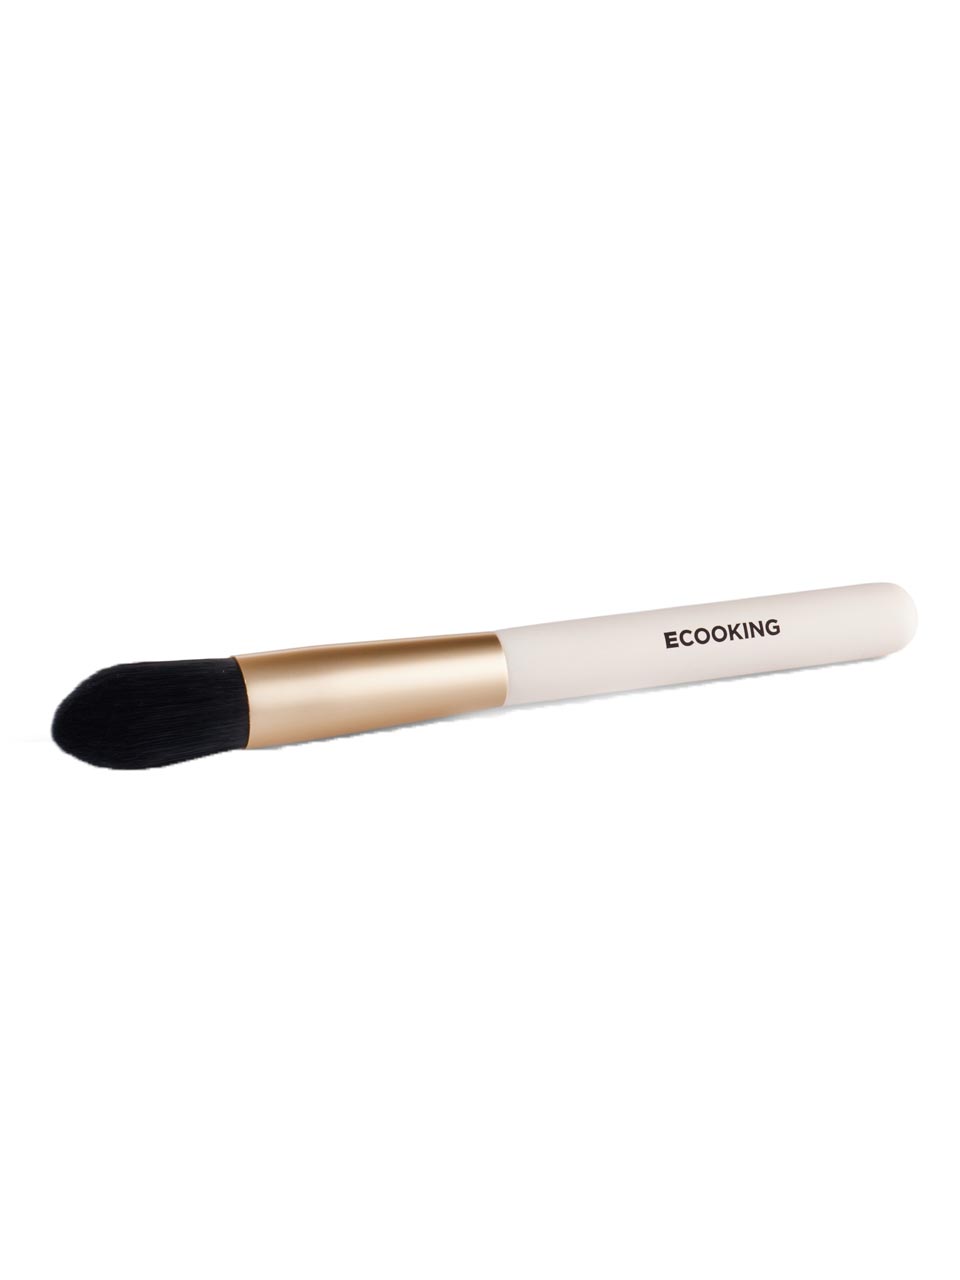 Ecooking Make-up Foundation Brush 34 g null - onesize - 1